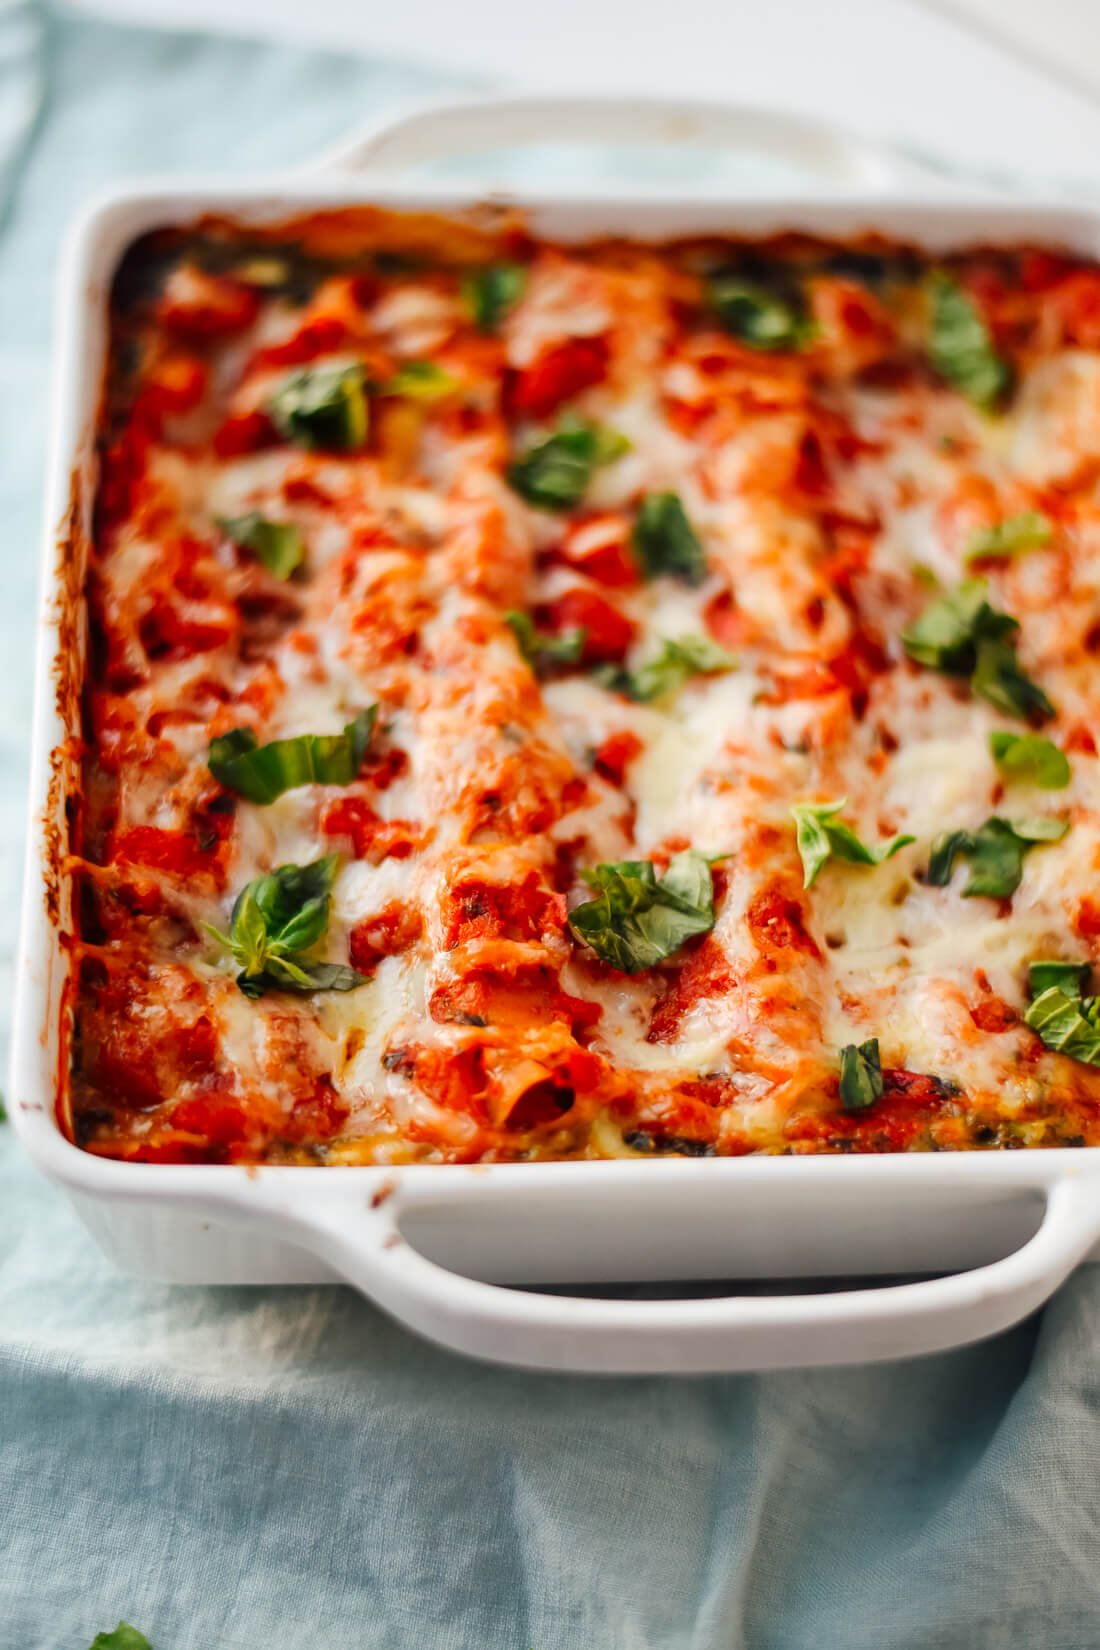 Homemade spinach lasagna